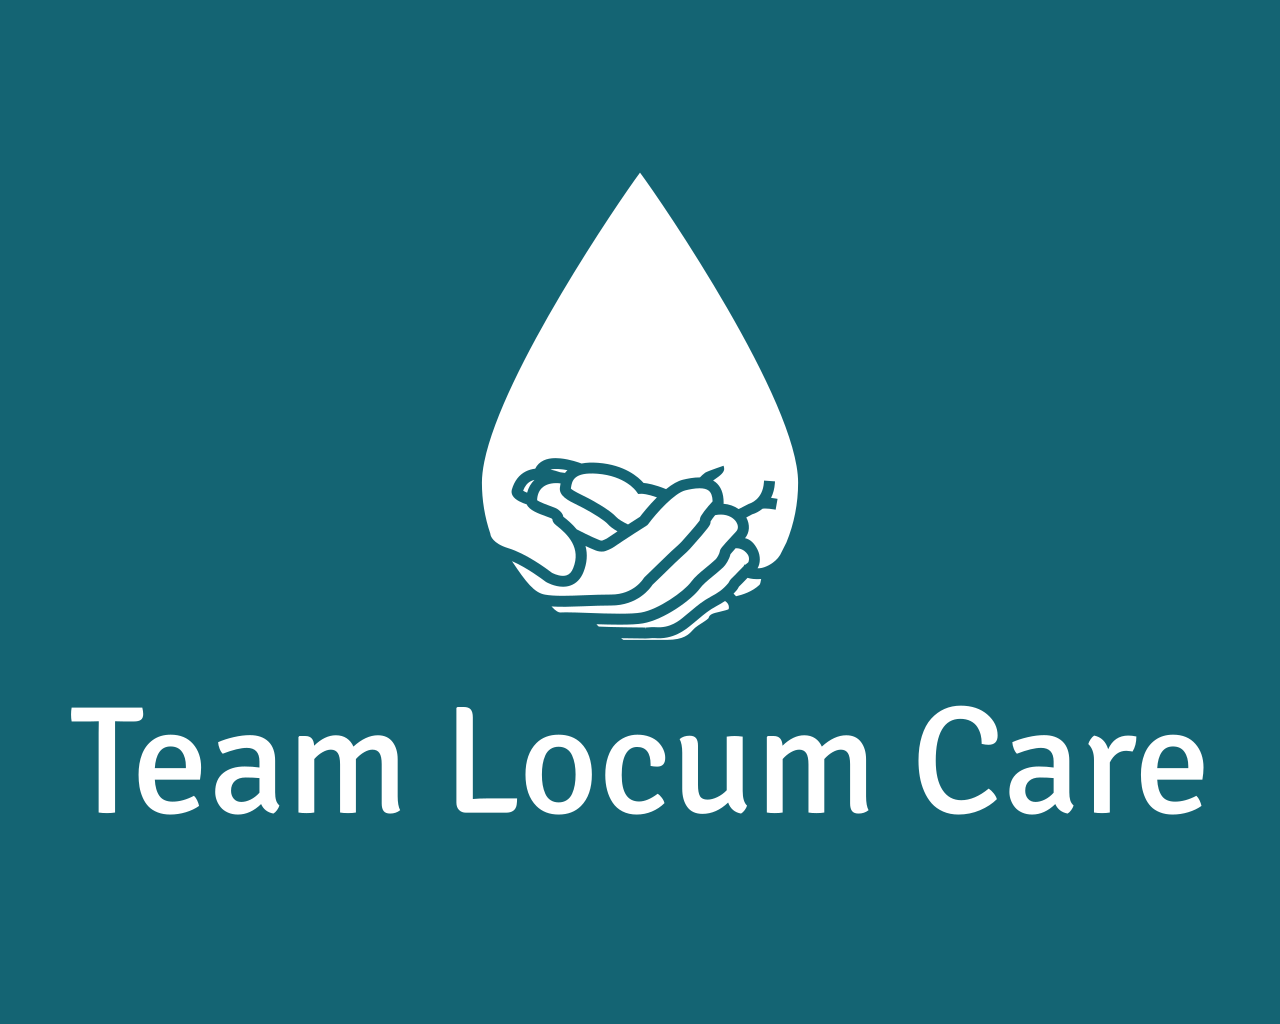 Team locum